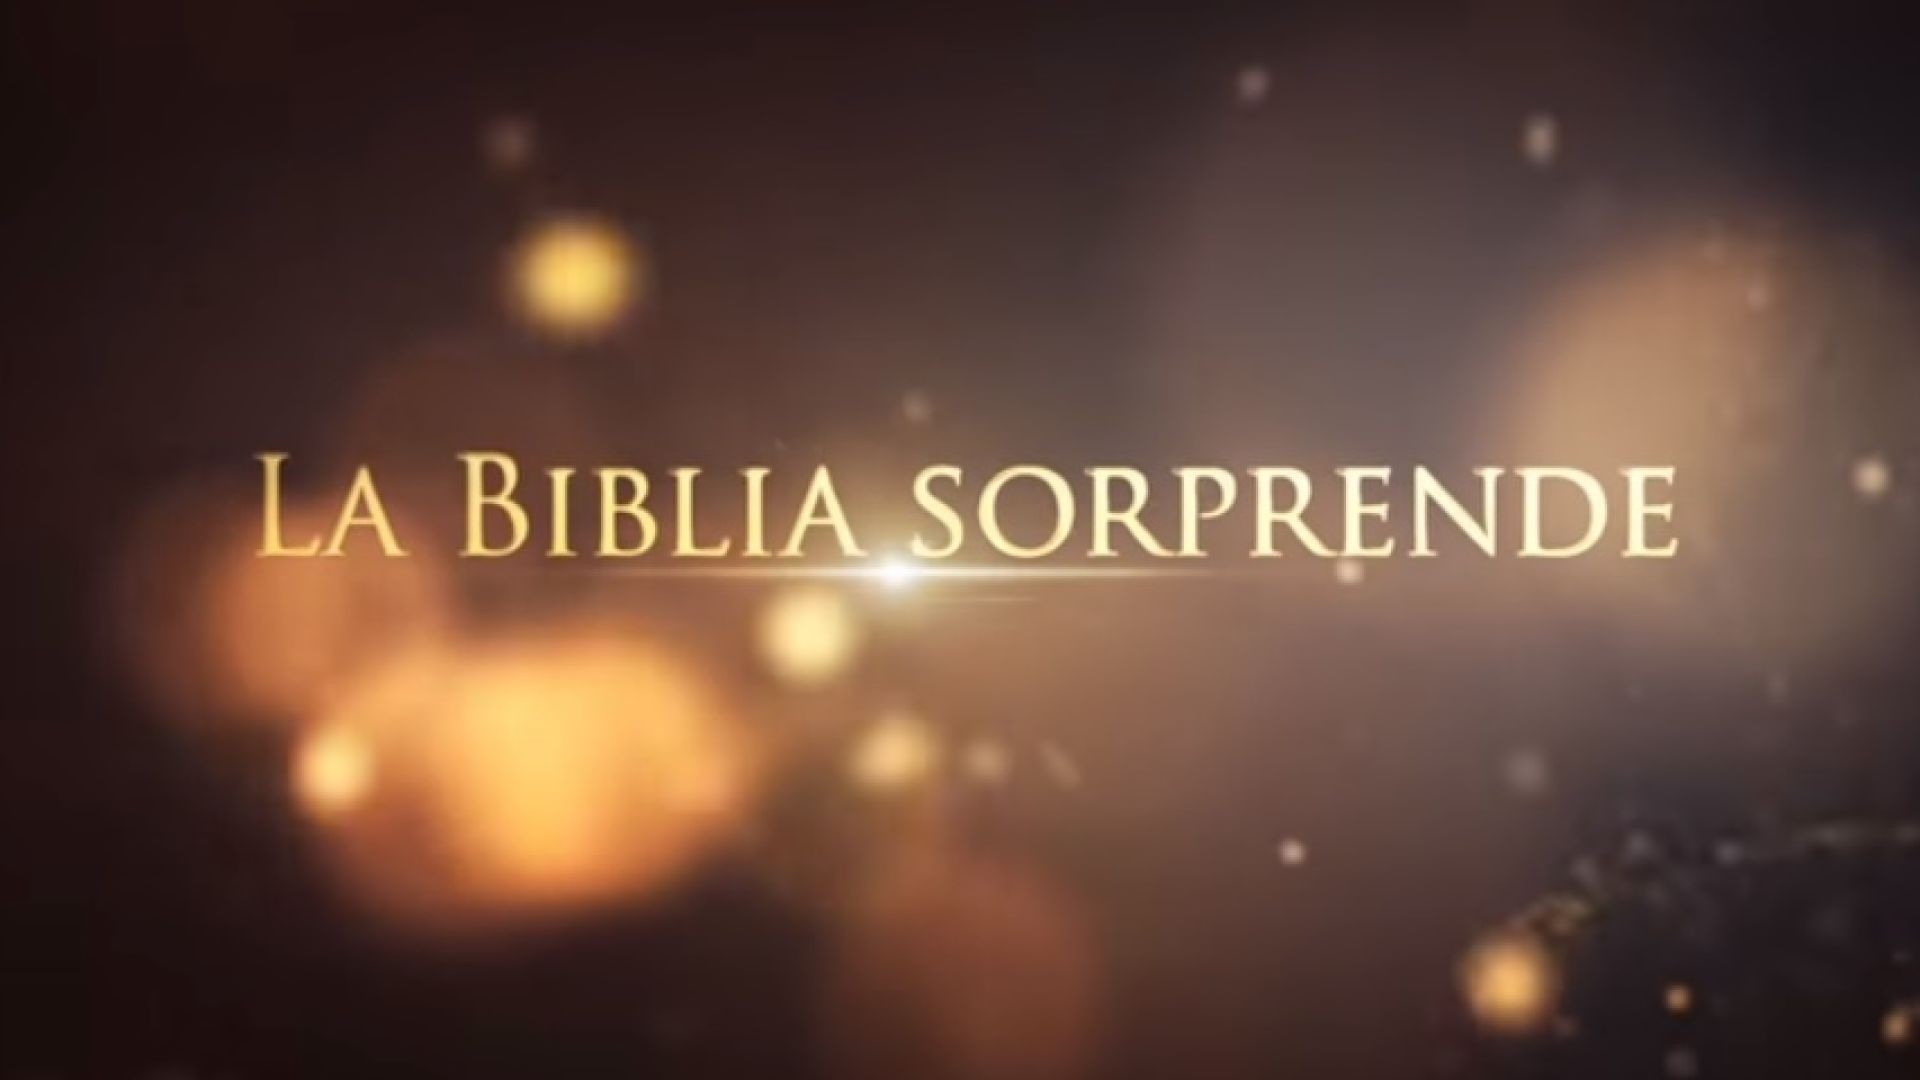 14 Fenómenos paranormales | La Biblia Sorprende 1ra temporada - Juan Surroca